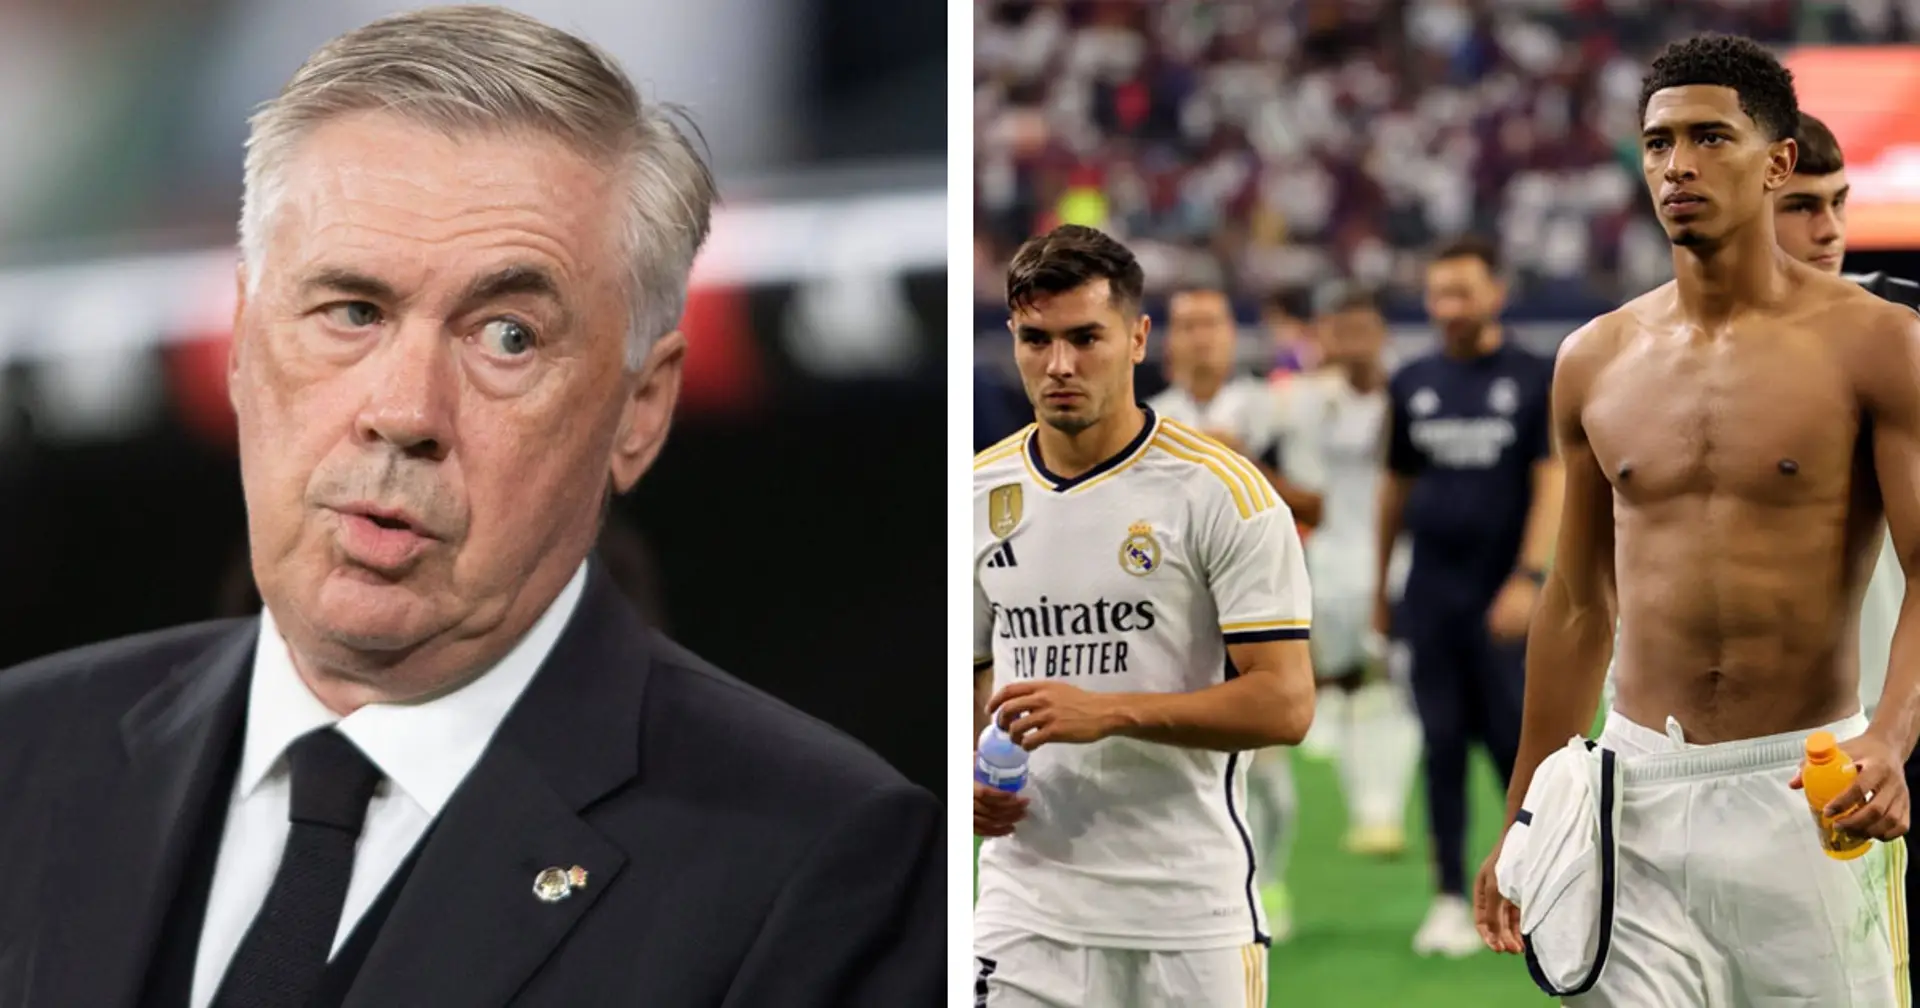 "Ancelotti a été injuste envers lui": les fans du Real Madrid nomment un joueur qui mérite plus de temps de jeu